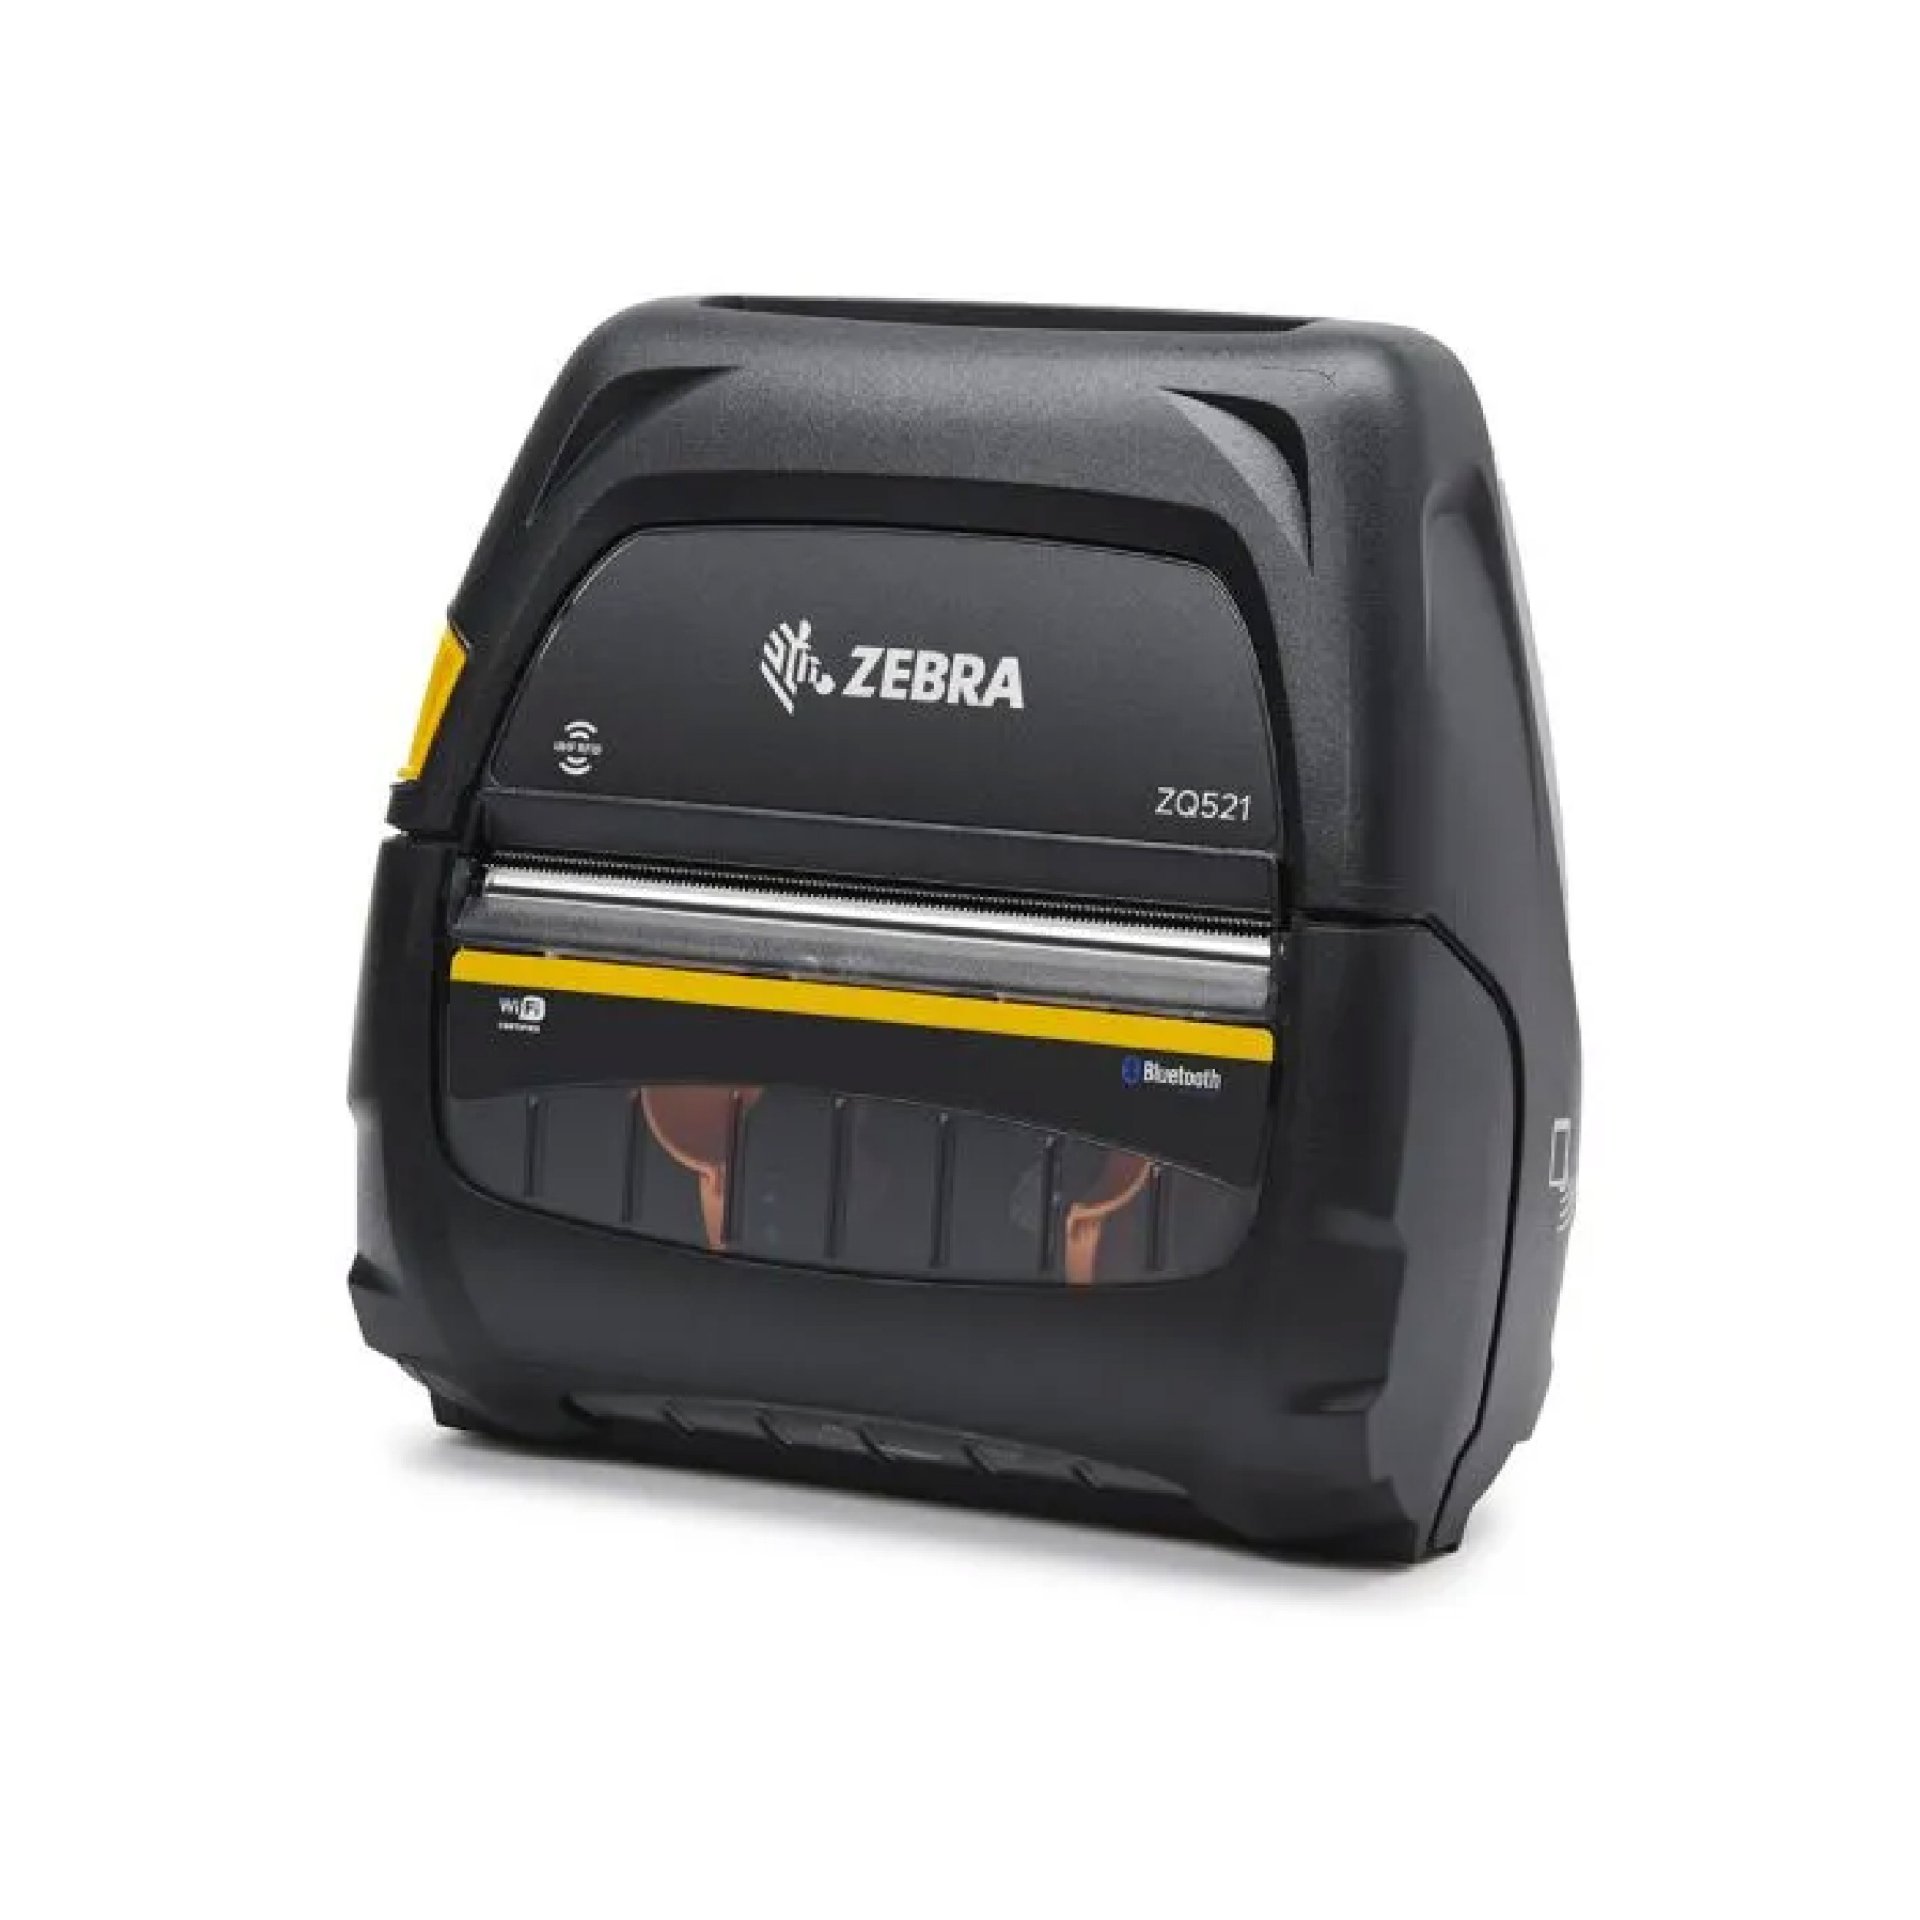 เครื่องพิมพ์ใบเสร็จ แบบพกพา Zebra รุ่น Zq521 Cps 6726